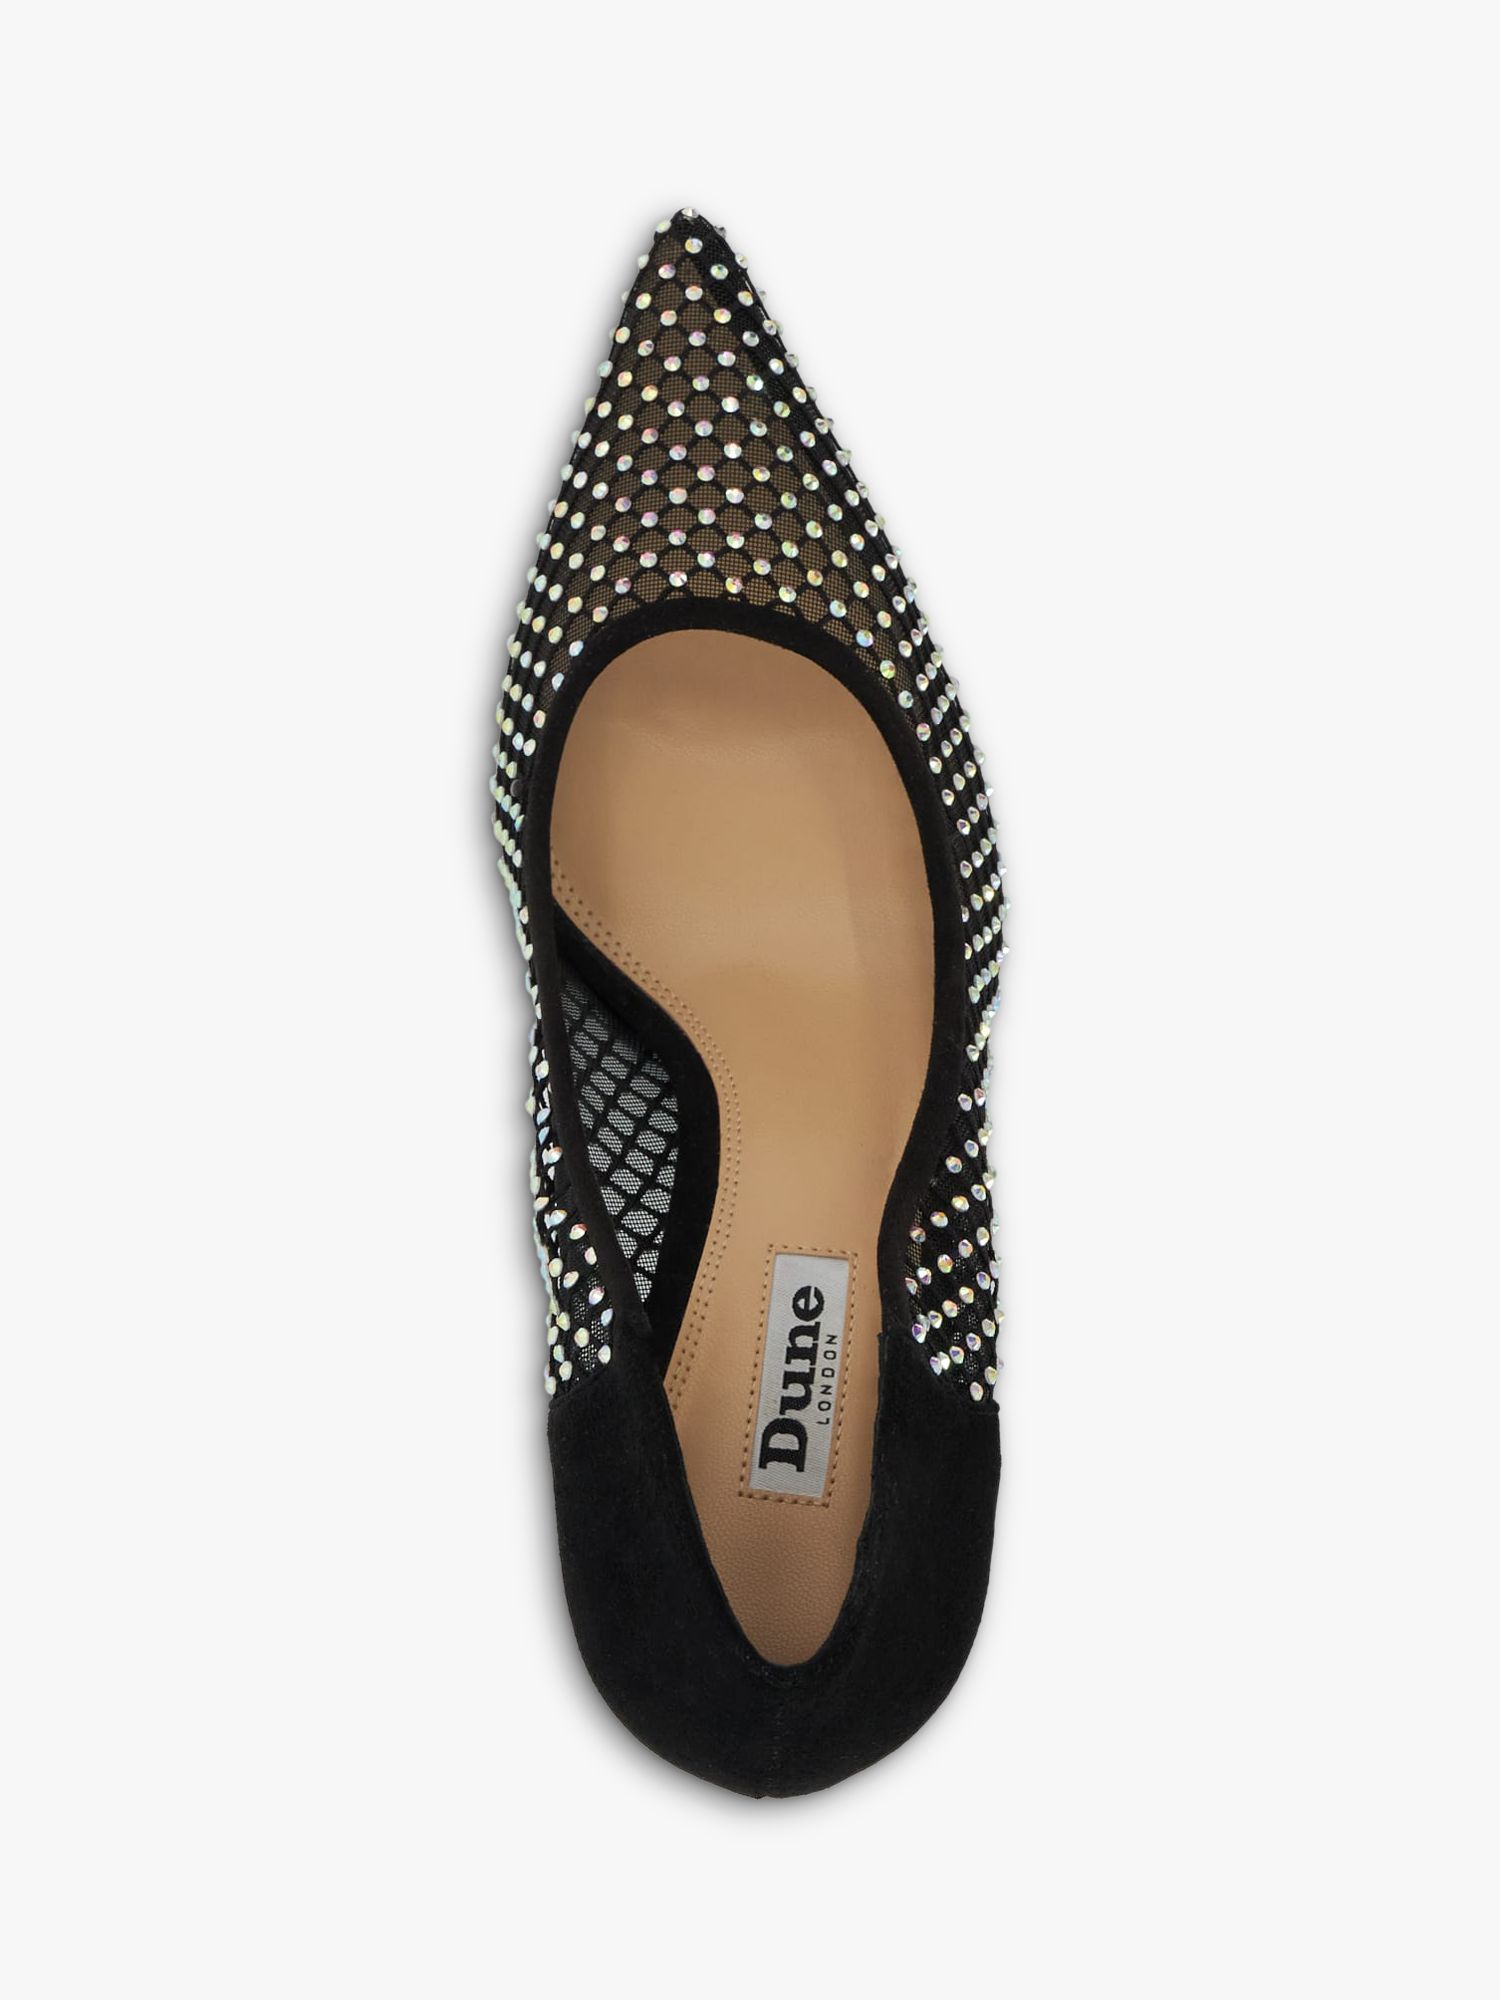 Dune Affect High Heel Embellished Court Shoes, Black, 3